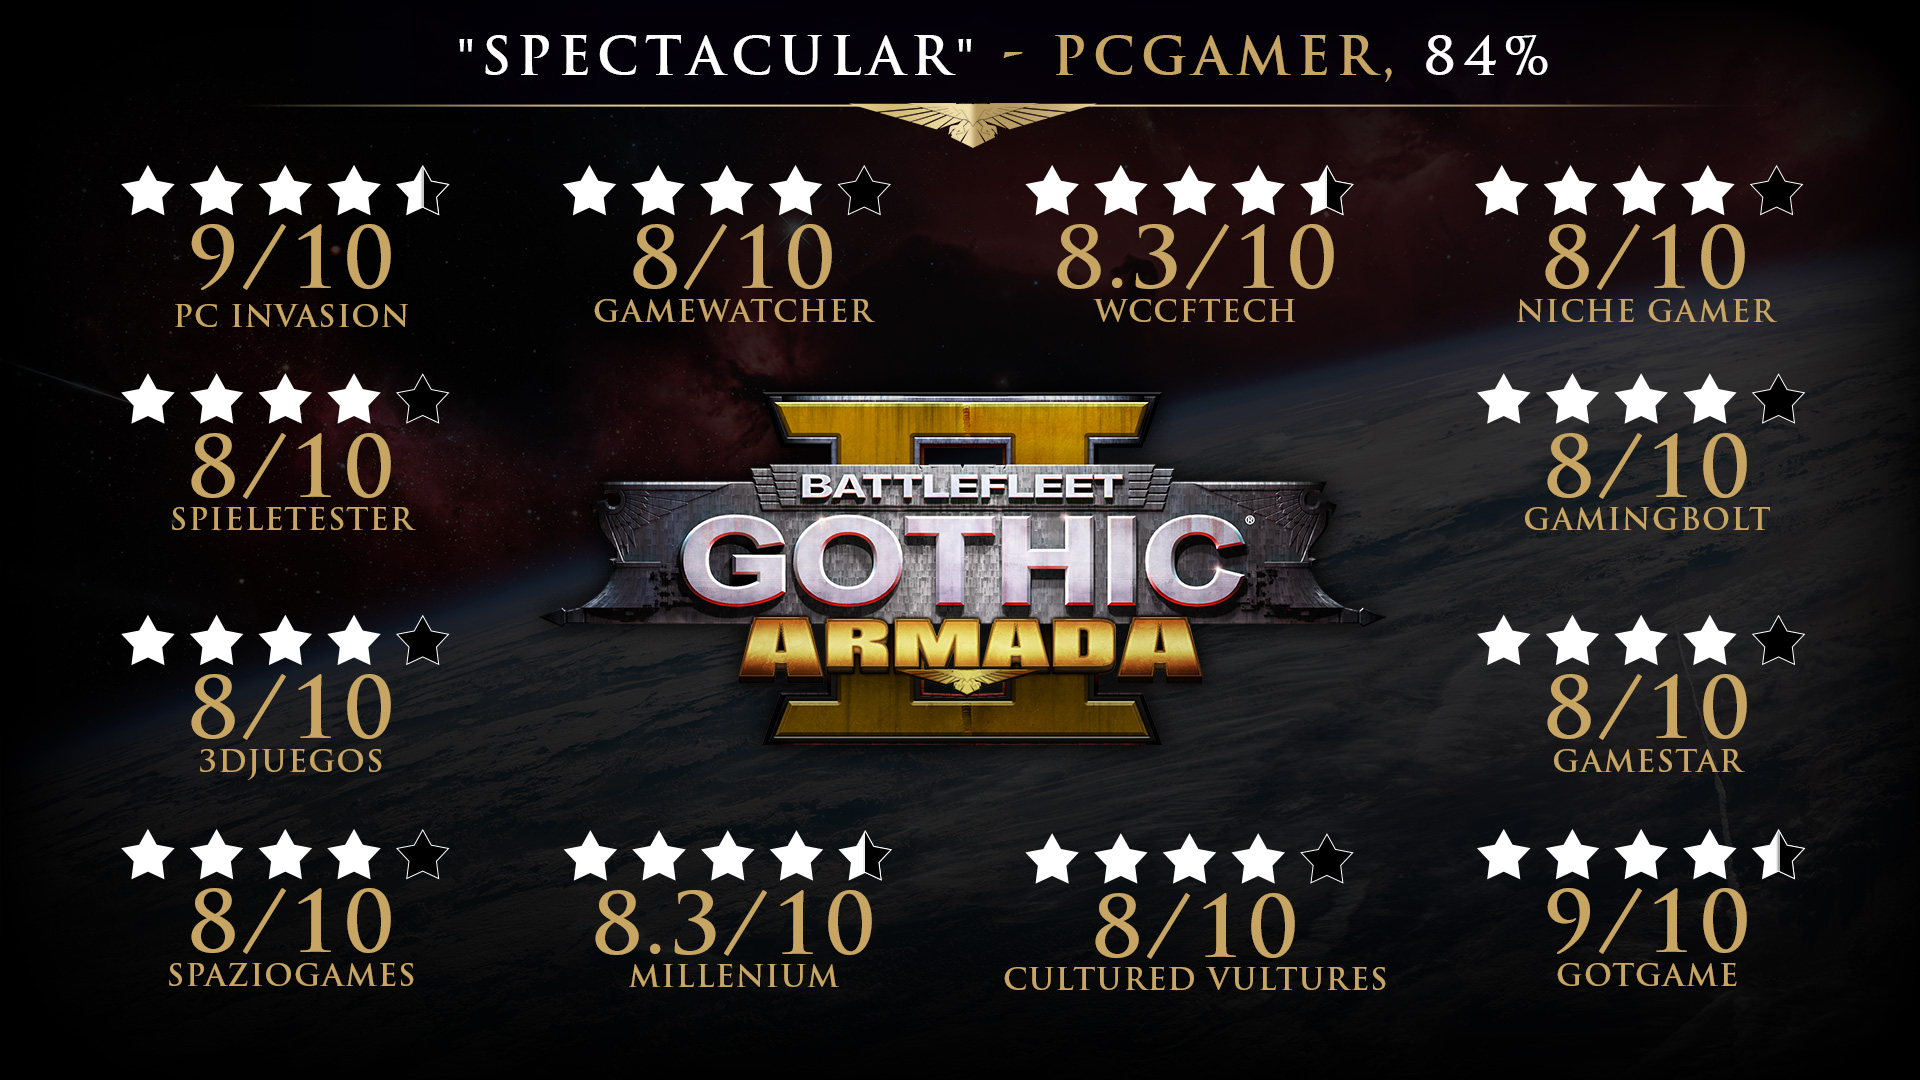 Find the best laptops for Battlefleet Gothic: Armada 2